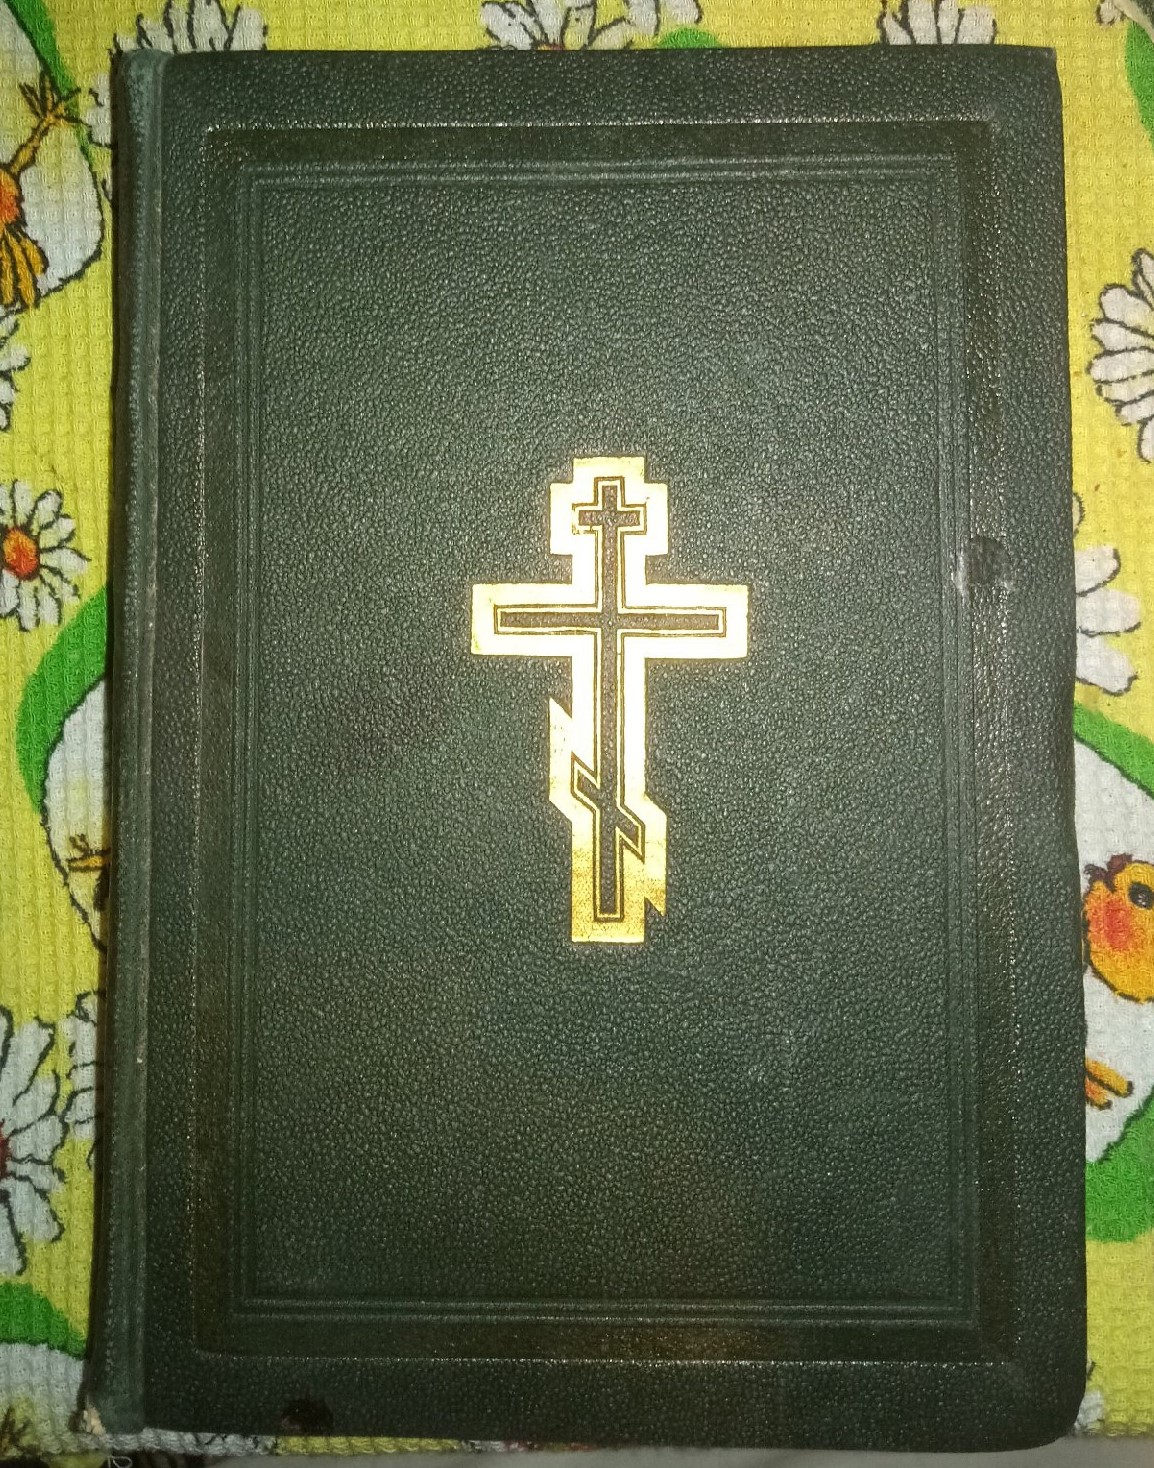 Евангелие отца Василия Полетаева (подаренная монахиней Вирсавией)